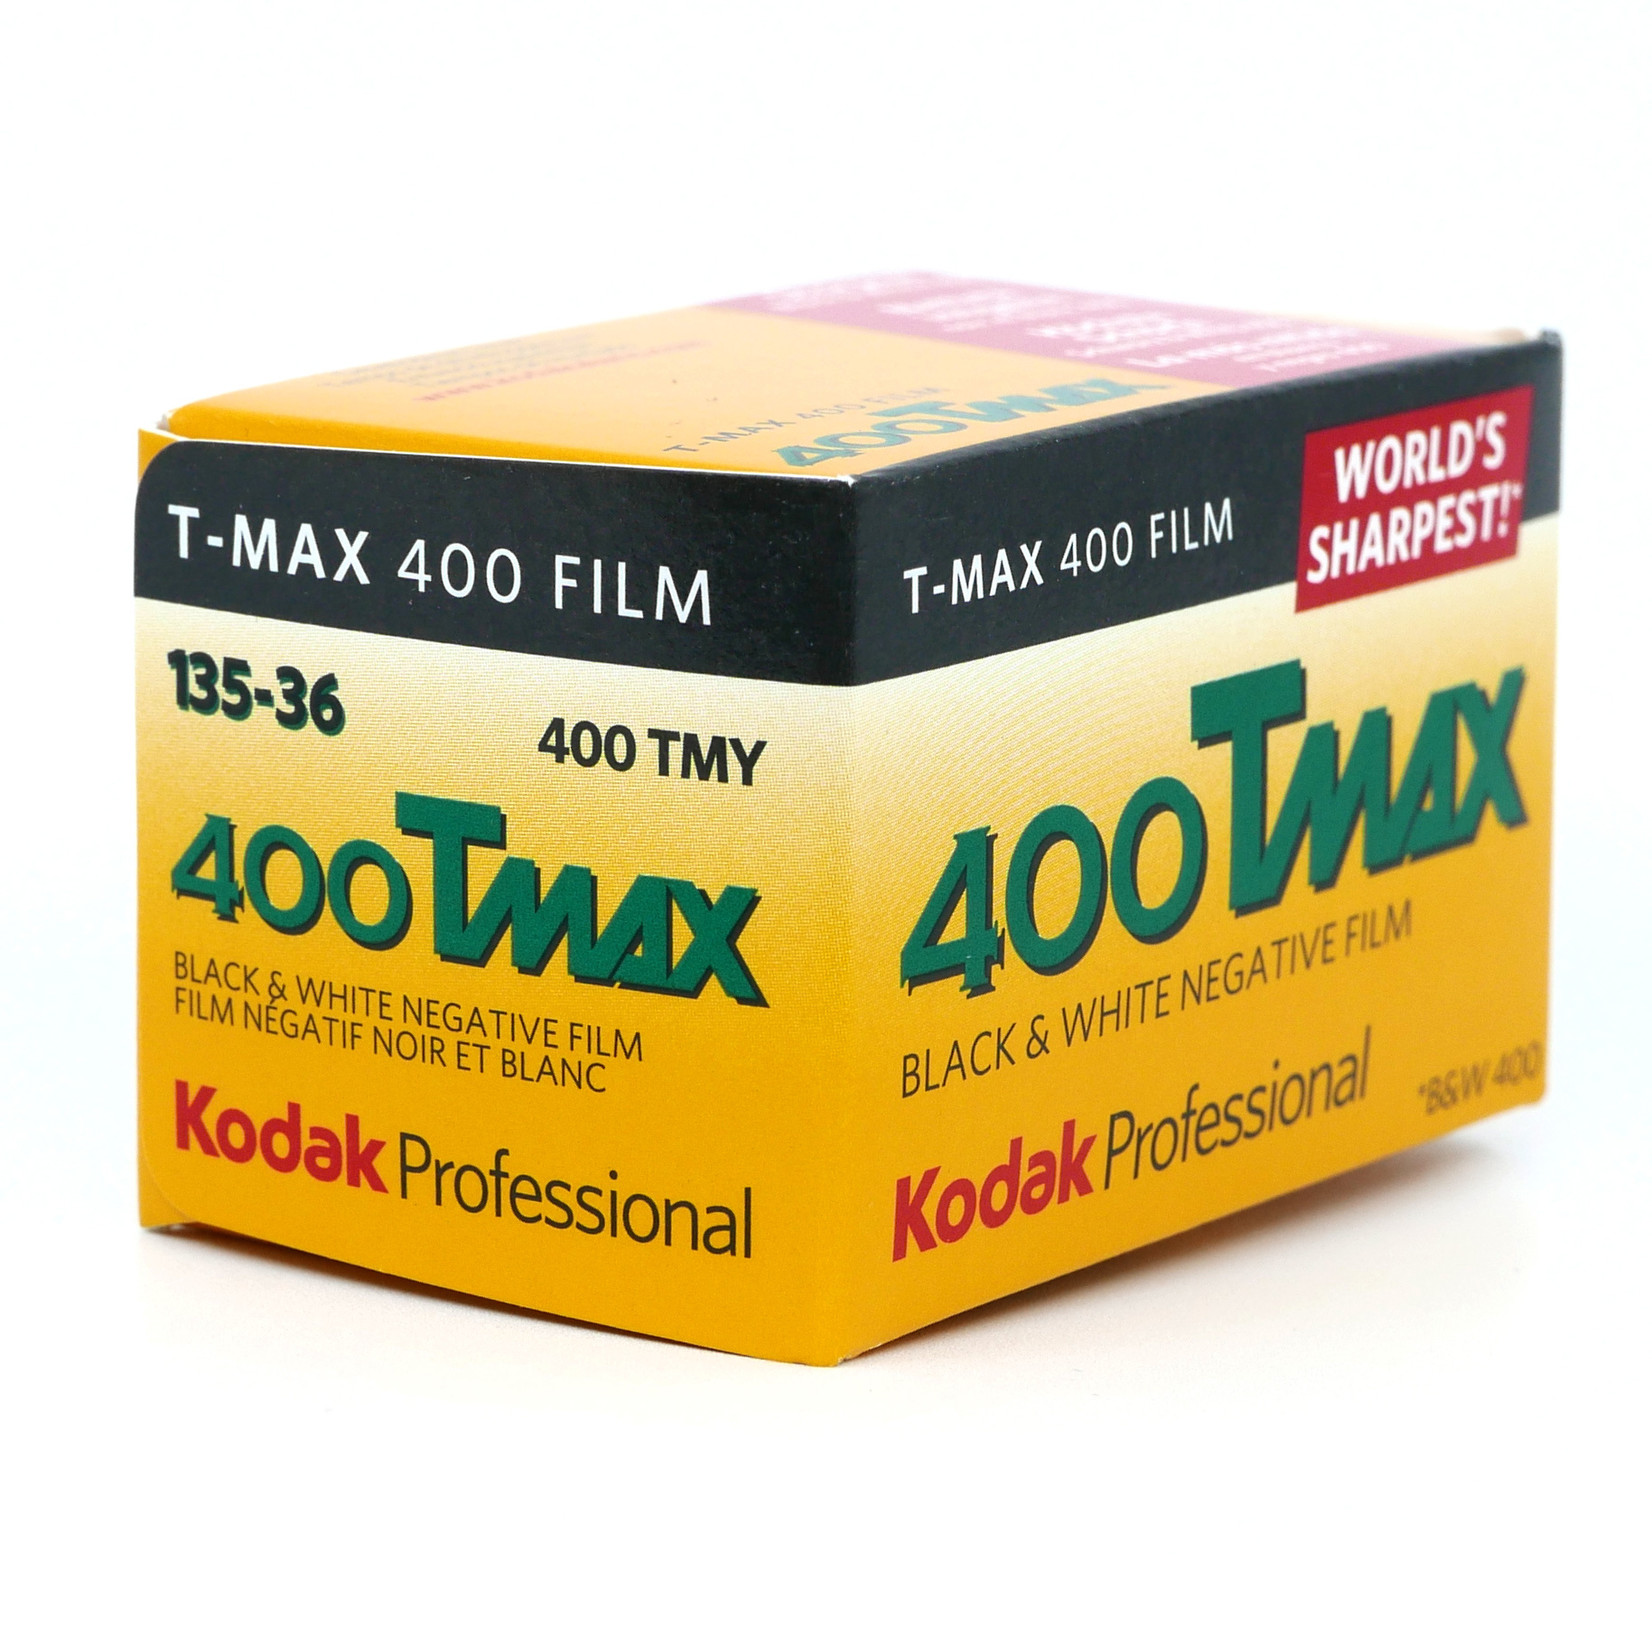 Kodak Kodak 400 T-Max 135-36